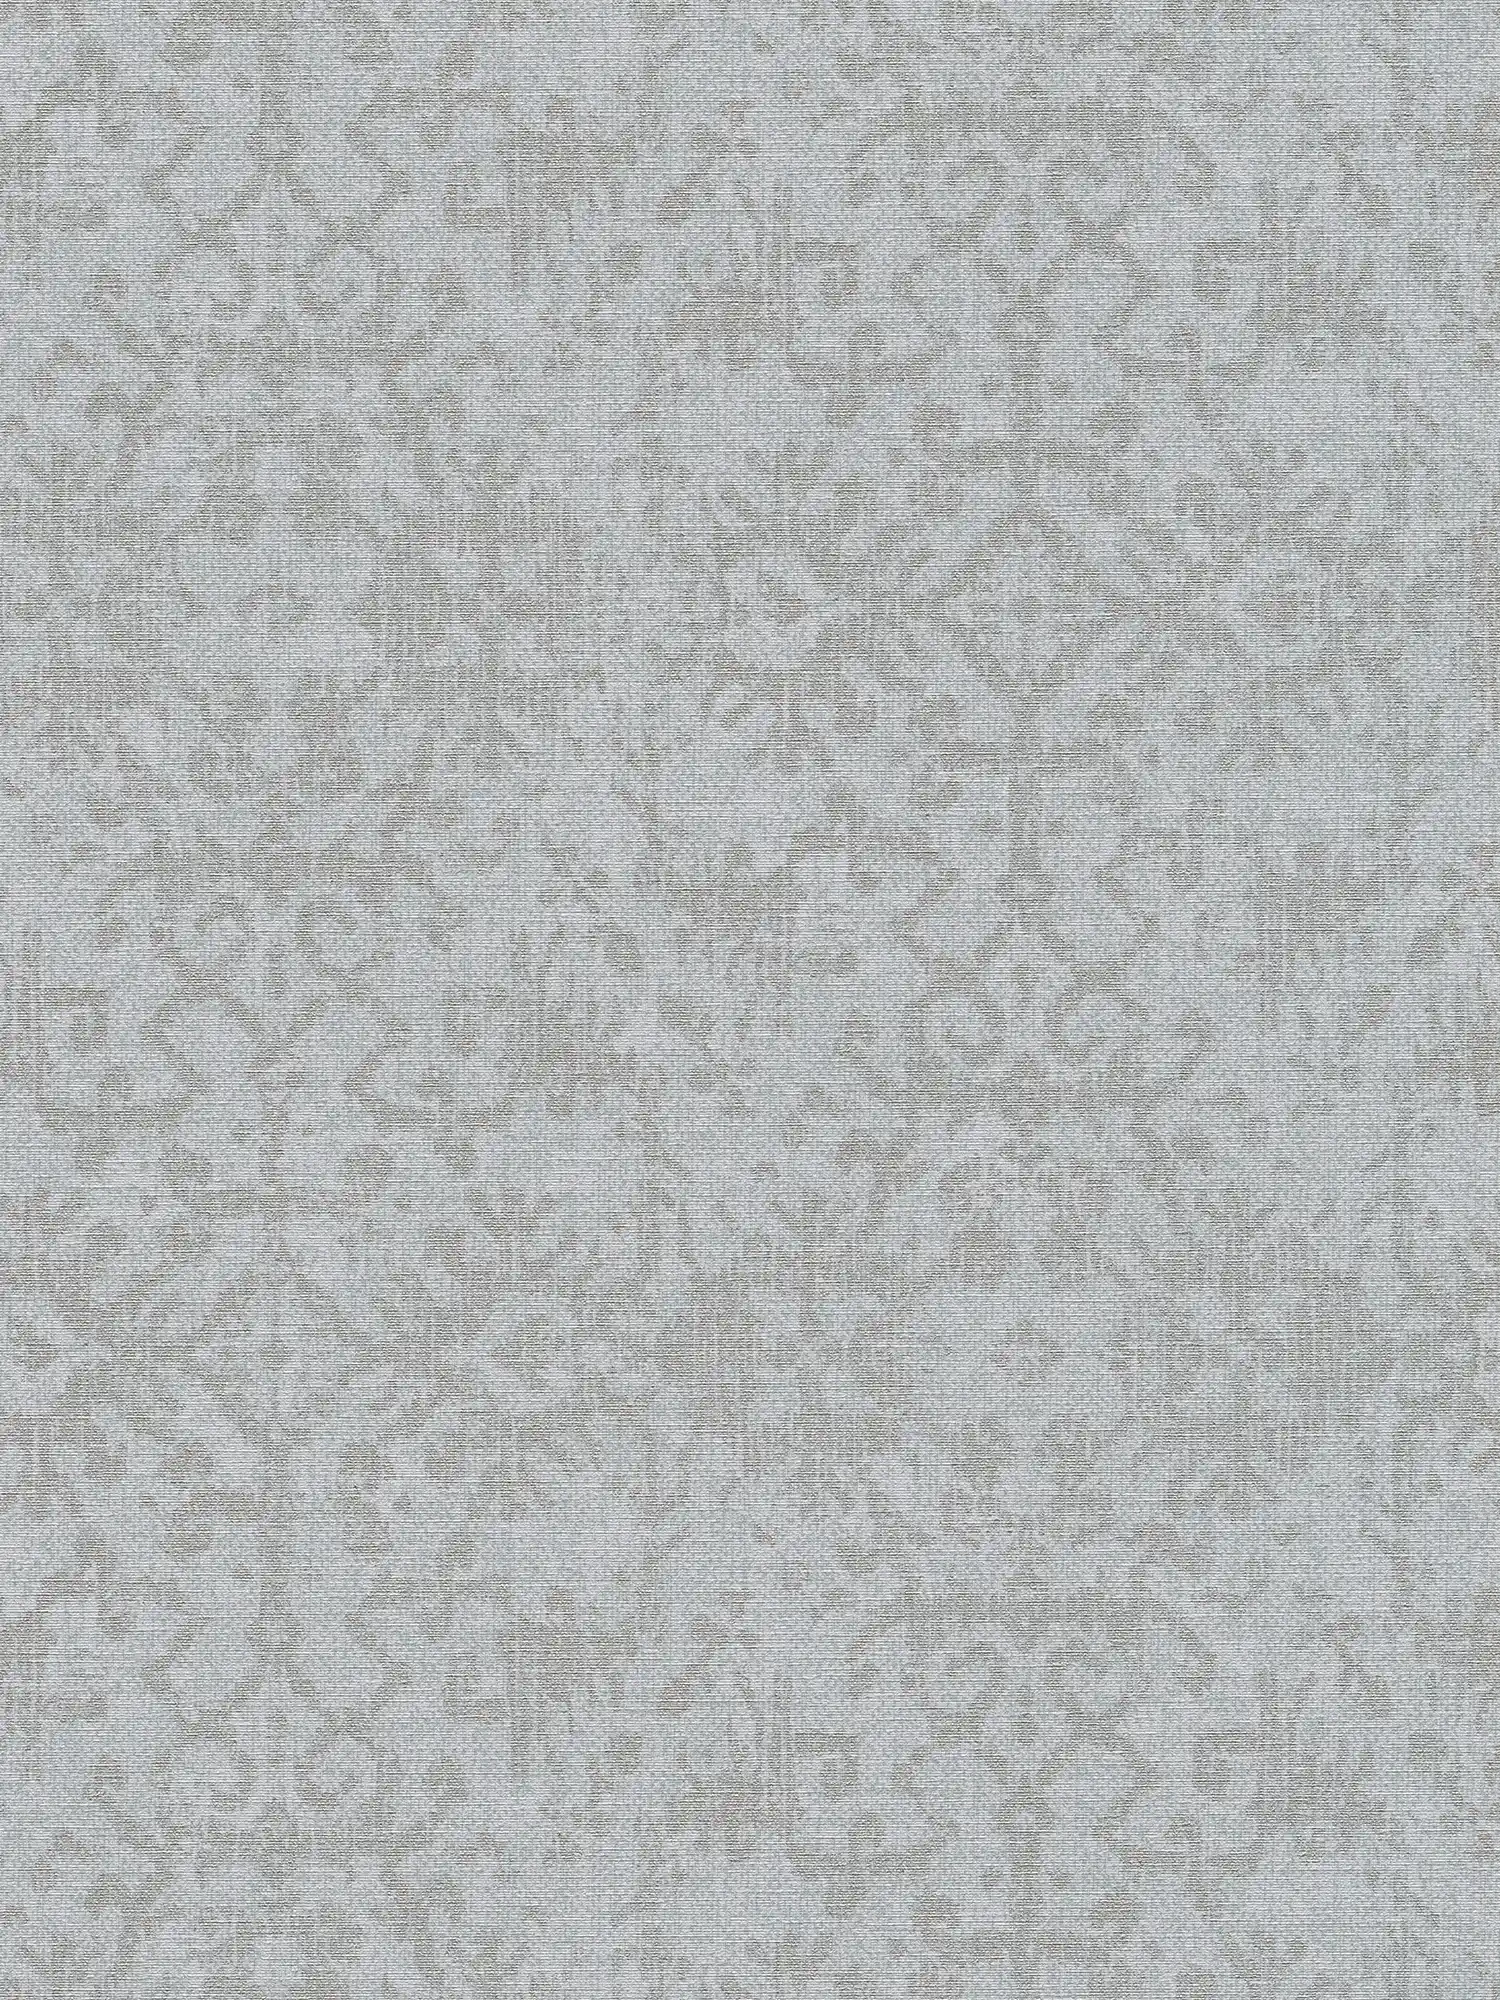 papel pintado de óptica textil con motivos étnicos - gris
